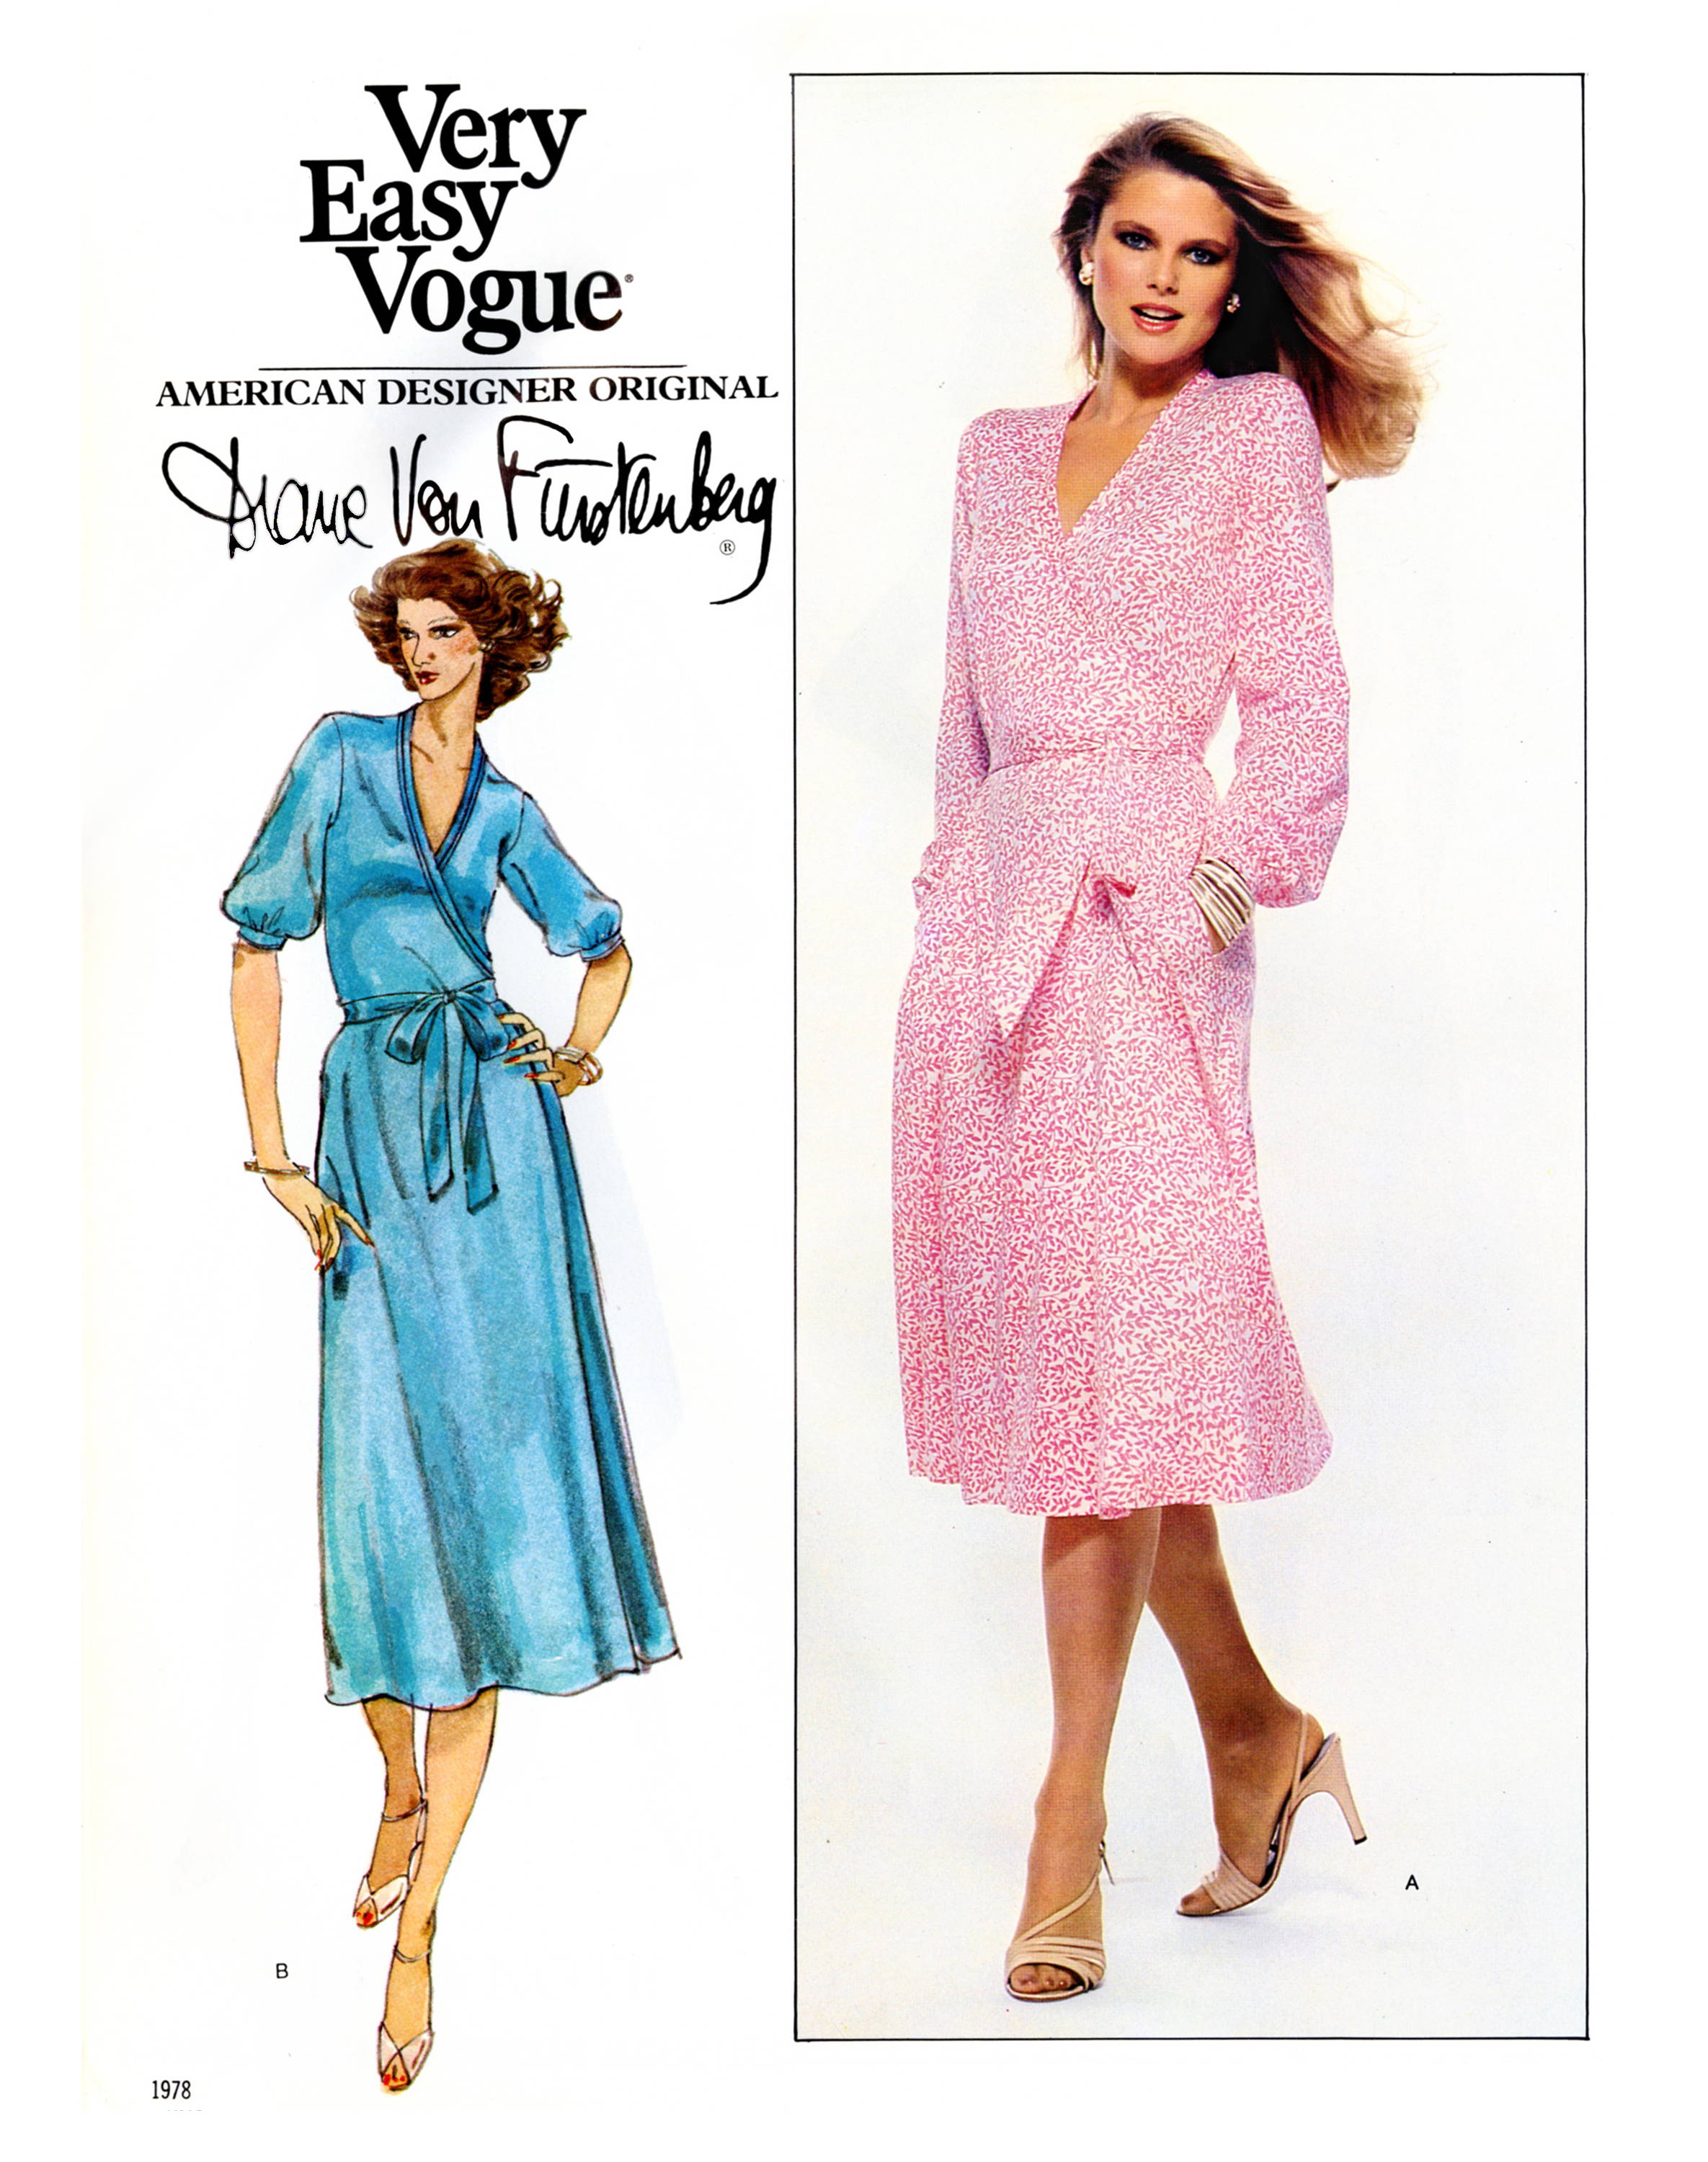 Very Easy Vogue American Designer Original by Diane von Furstenberg